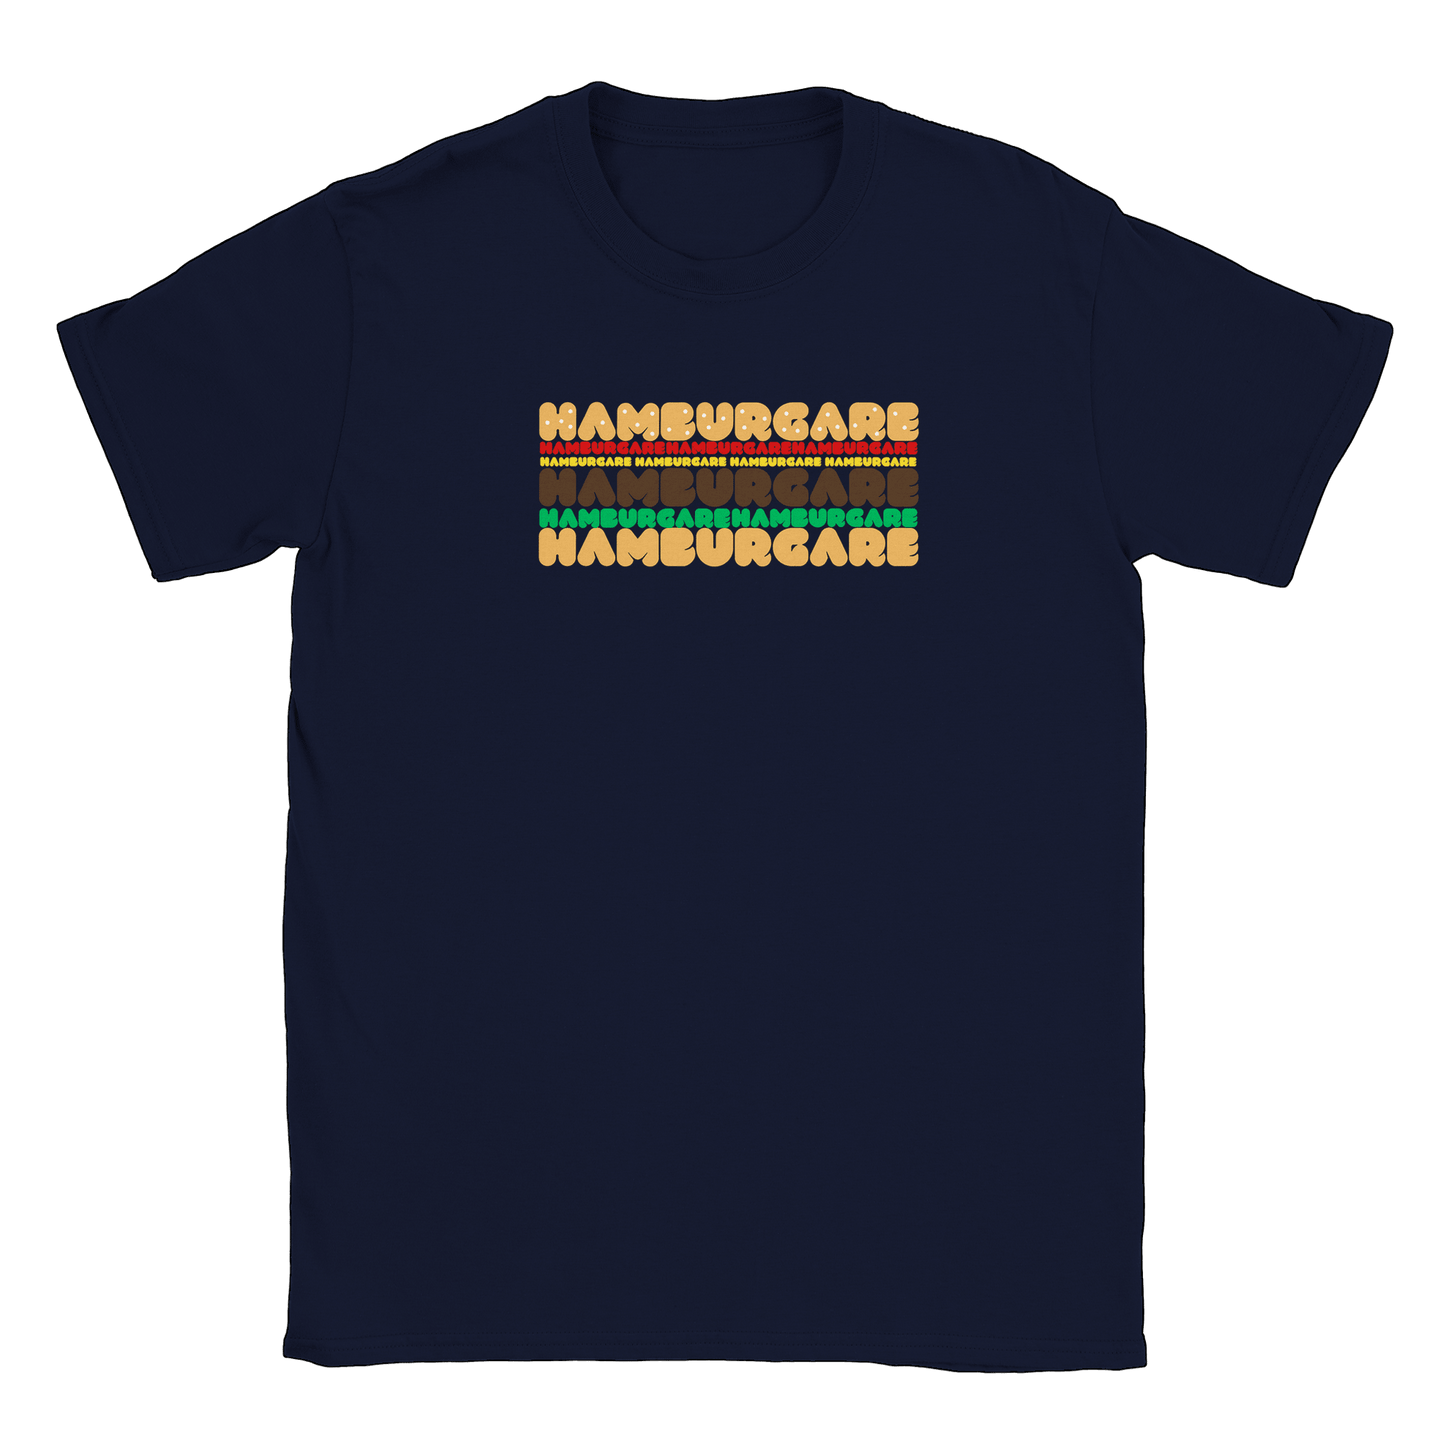 Hamburgare - T-shirt Navy